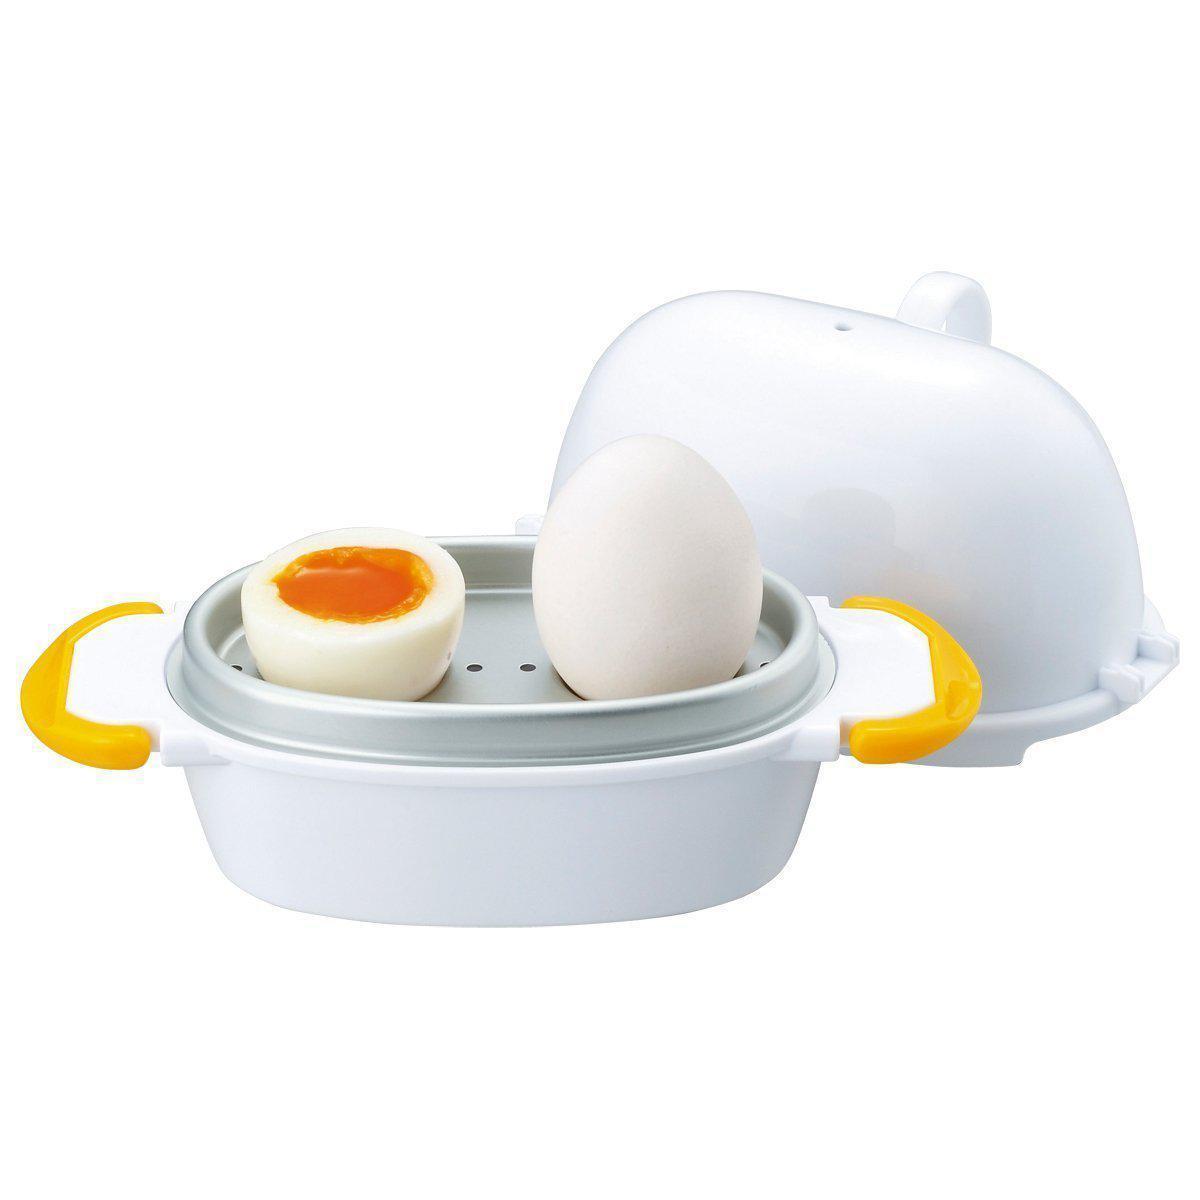 https://int.japanesetaste.com/cdn/shop/files/akebono-microwave-egg-cooker-2-eggs-capacity-re-277-japanese-taste.jpg?v=1690598120&width=5760